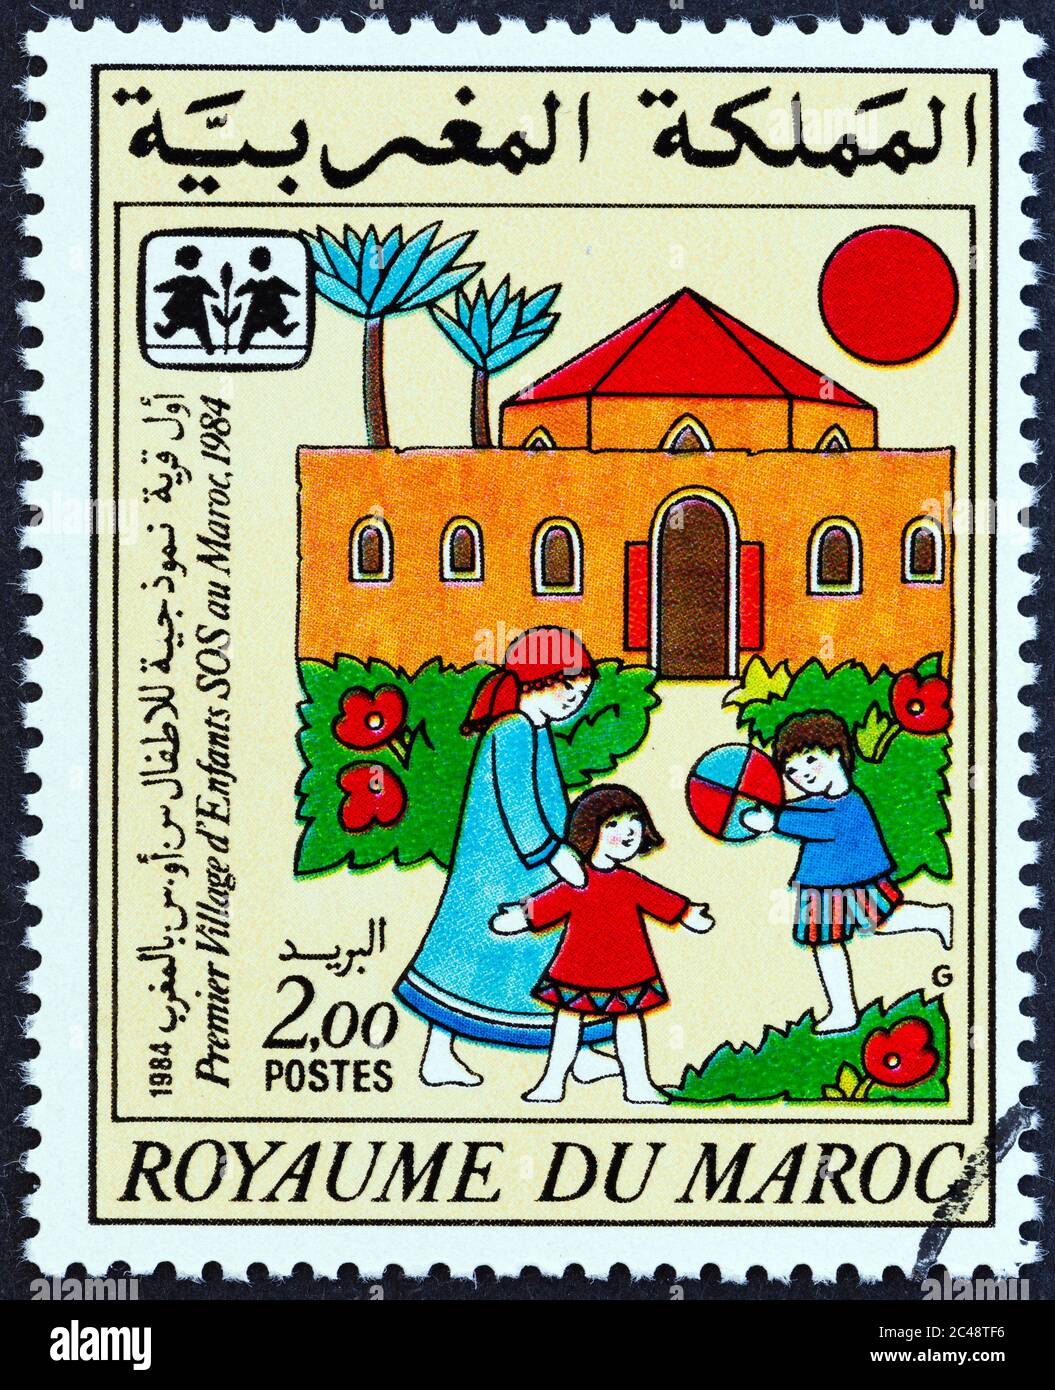 MAROKKO - UM 1985: Eine in Marokko gedruckte Briefmarke, die für die 1. Marokkanische S.O.S. ausgegeben wurde Kinderdorf zeigt SOS Kinderdorf, um 1985. Stockfoto